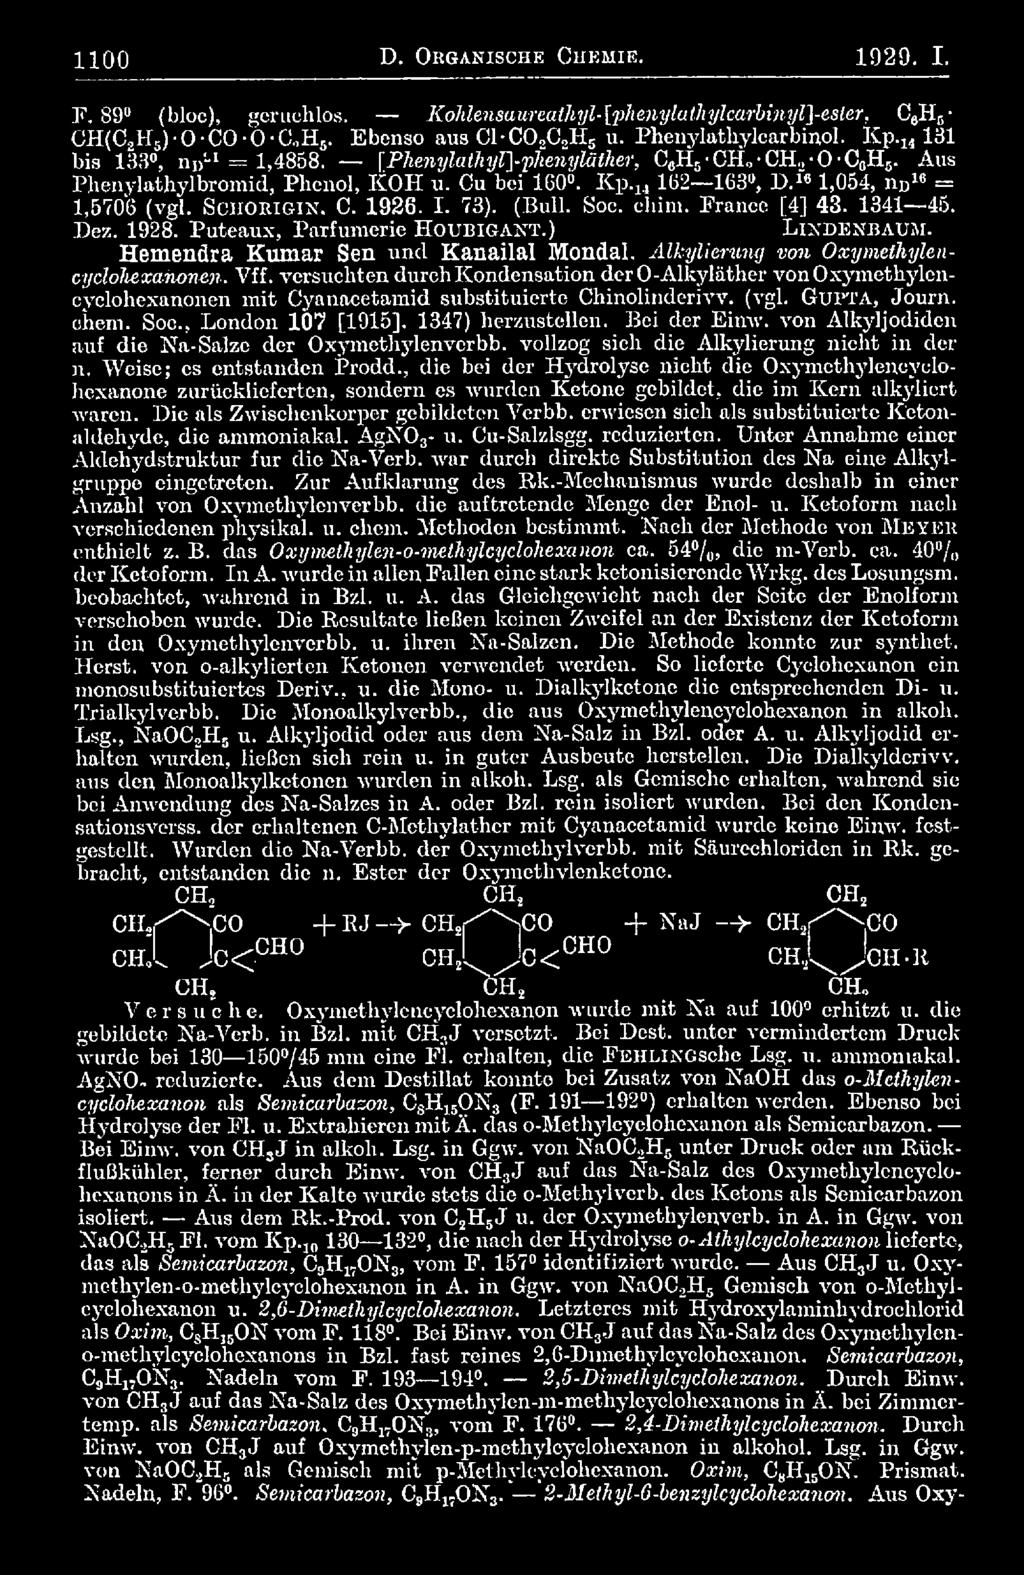 Soc., London 107 [1915]. 1347) lierzustellen. Bei der Einw. von Alkyljodidcn auf die Na-Salze der Oxymethylenverbb. vollzog sich die Alkylierung nicht in der n. Weise; cs entstanden Prodd.